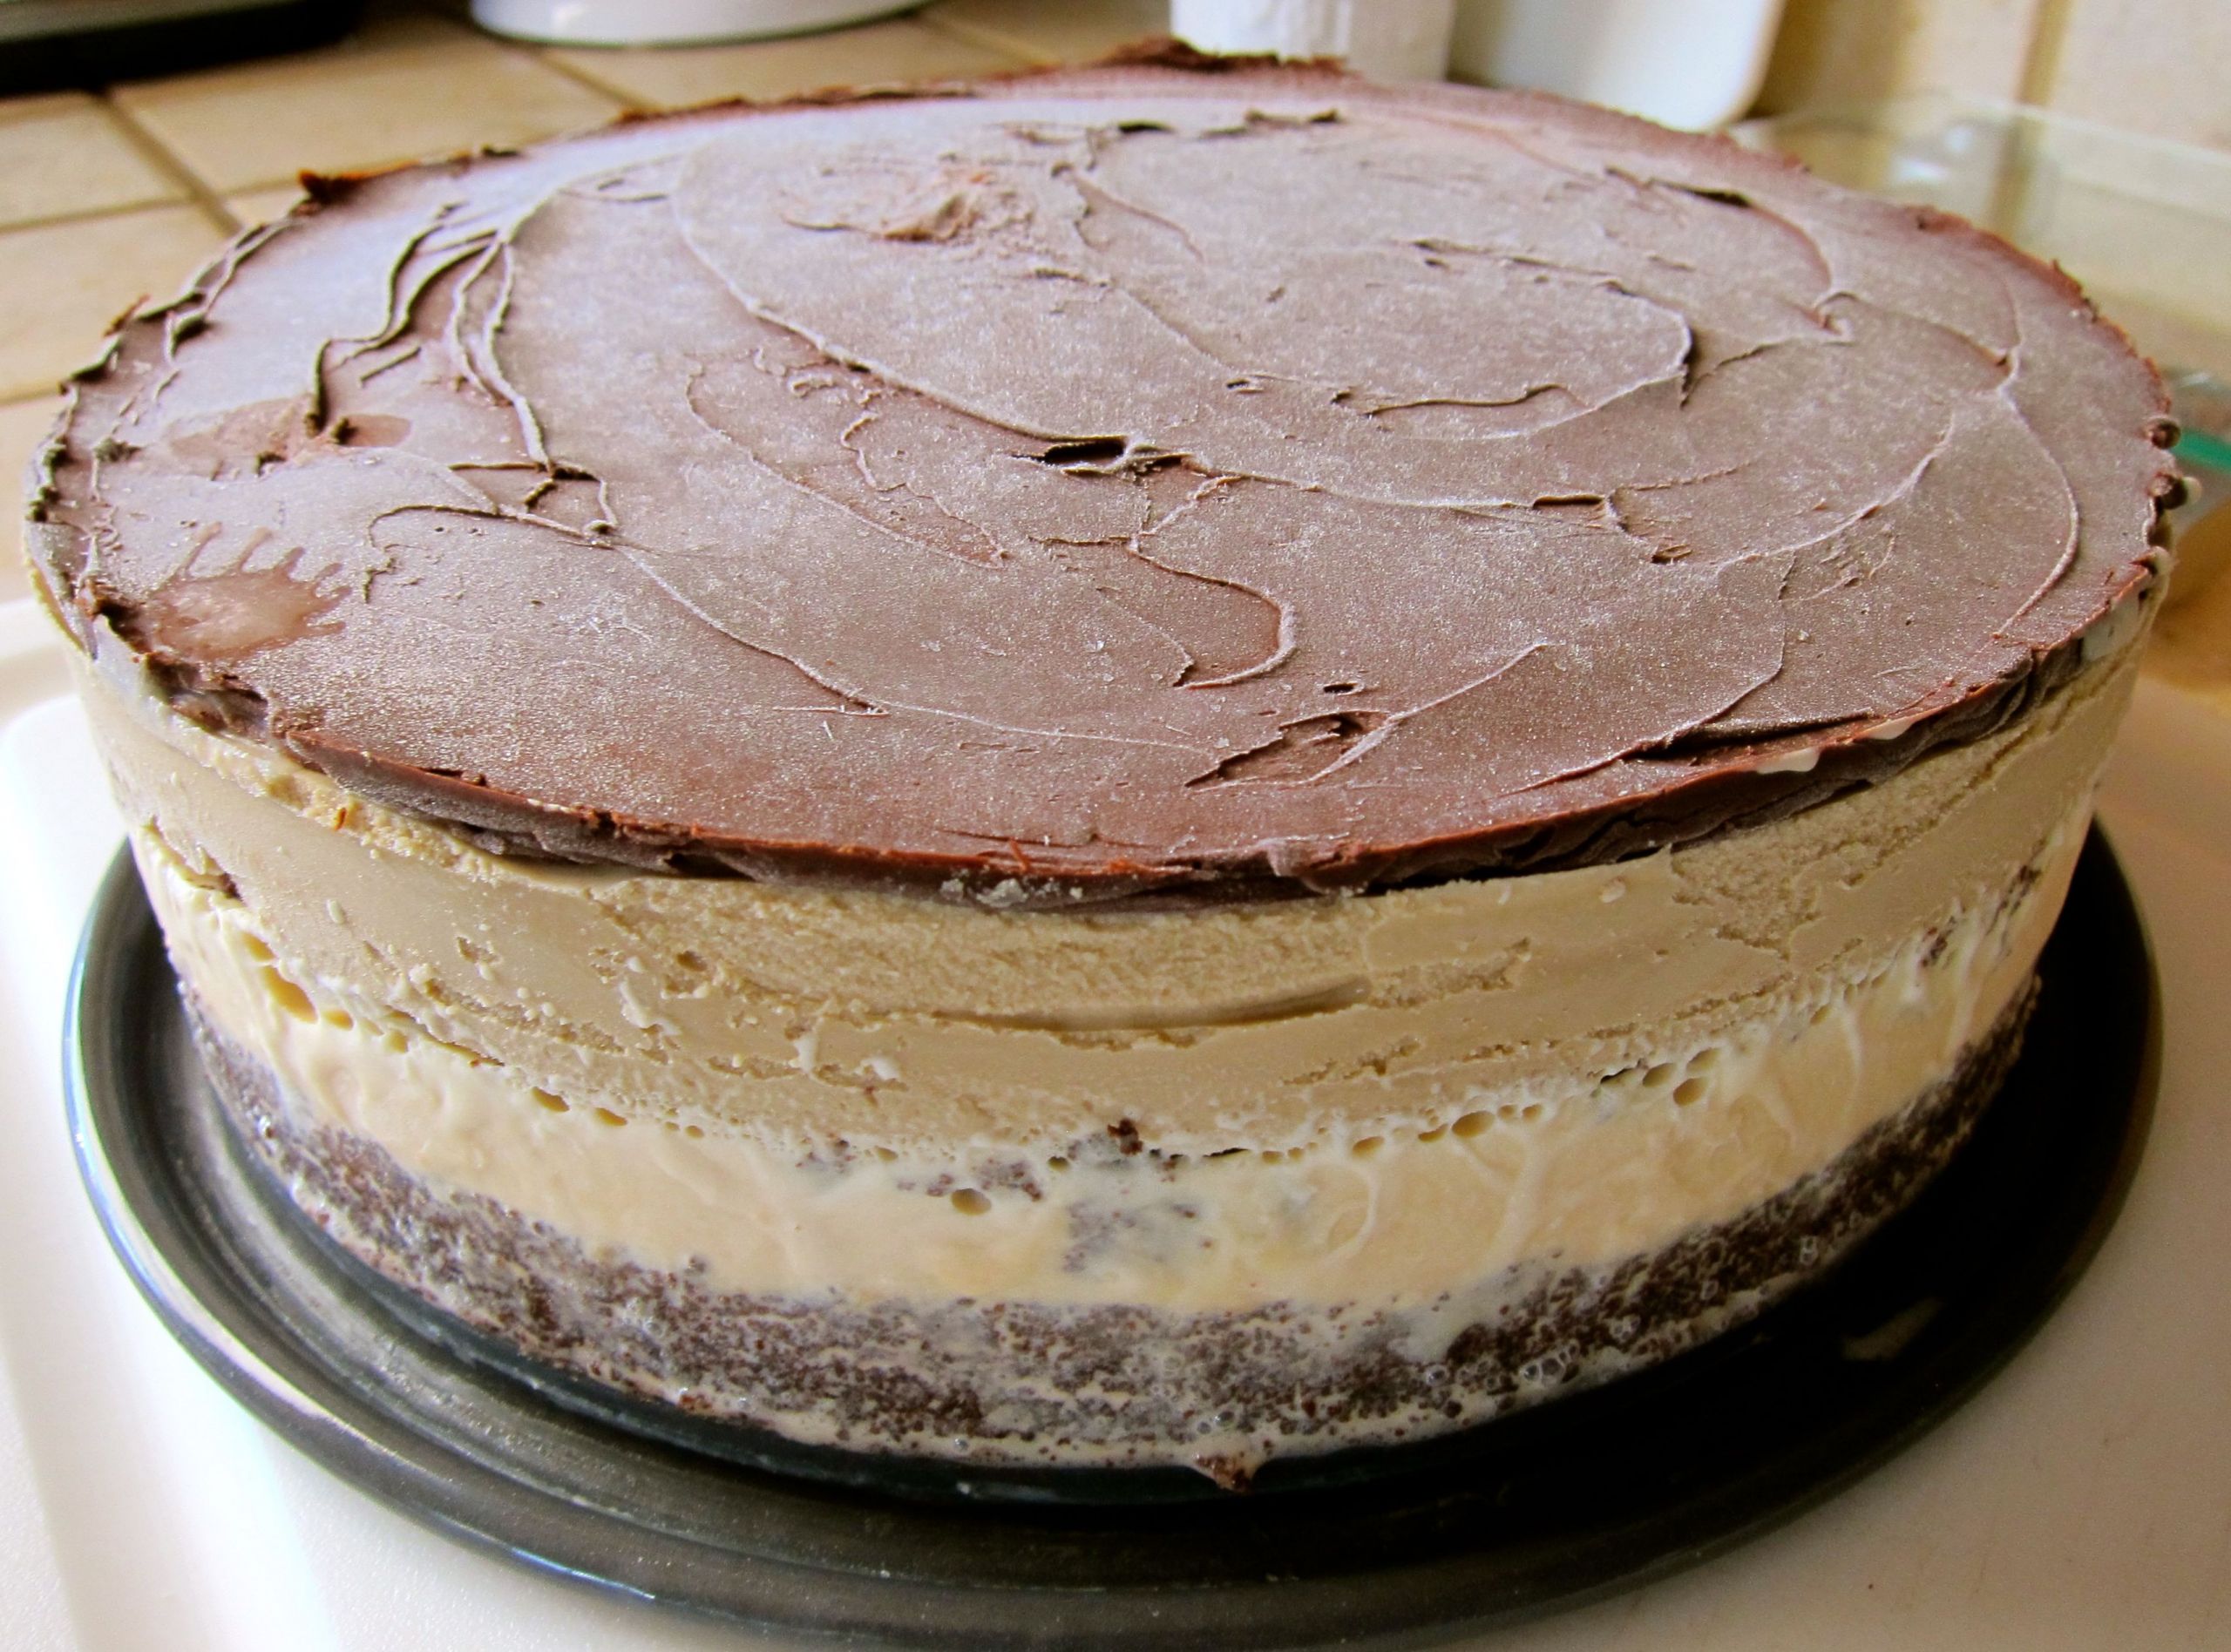 Oreo Ice Cream Cake Recipe Springform Pan
 Mile High Mud Pie with caramel and coffee ice creams Made